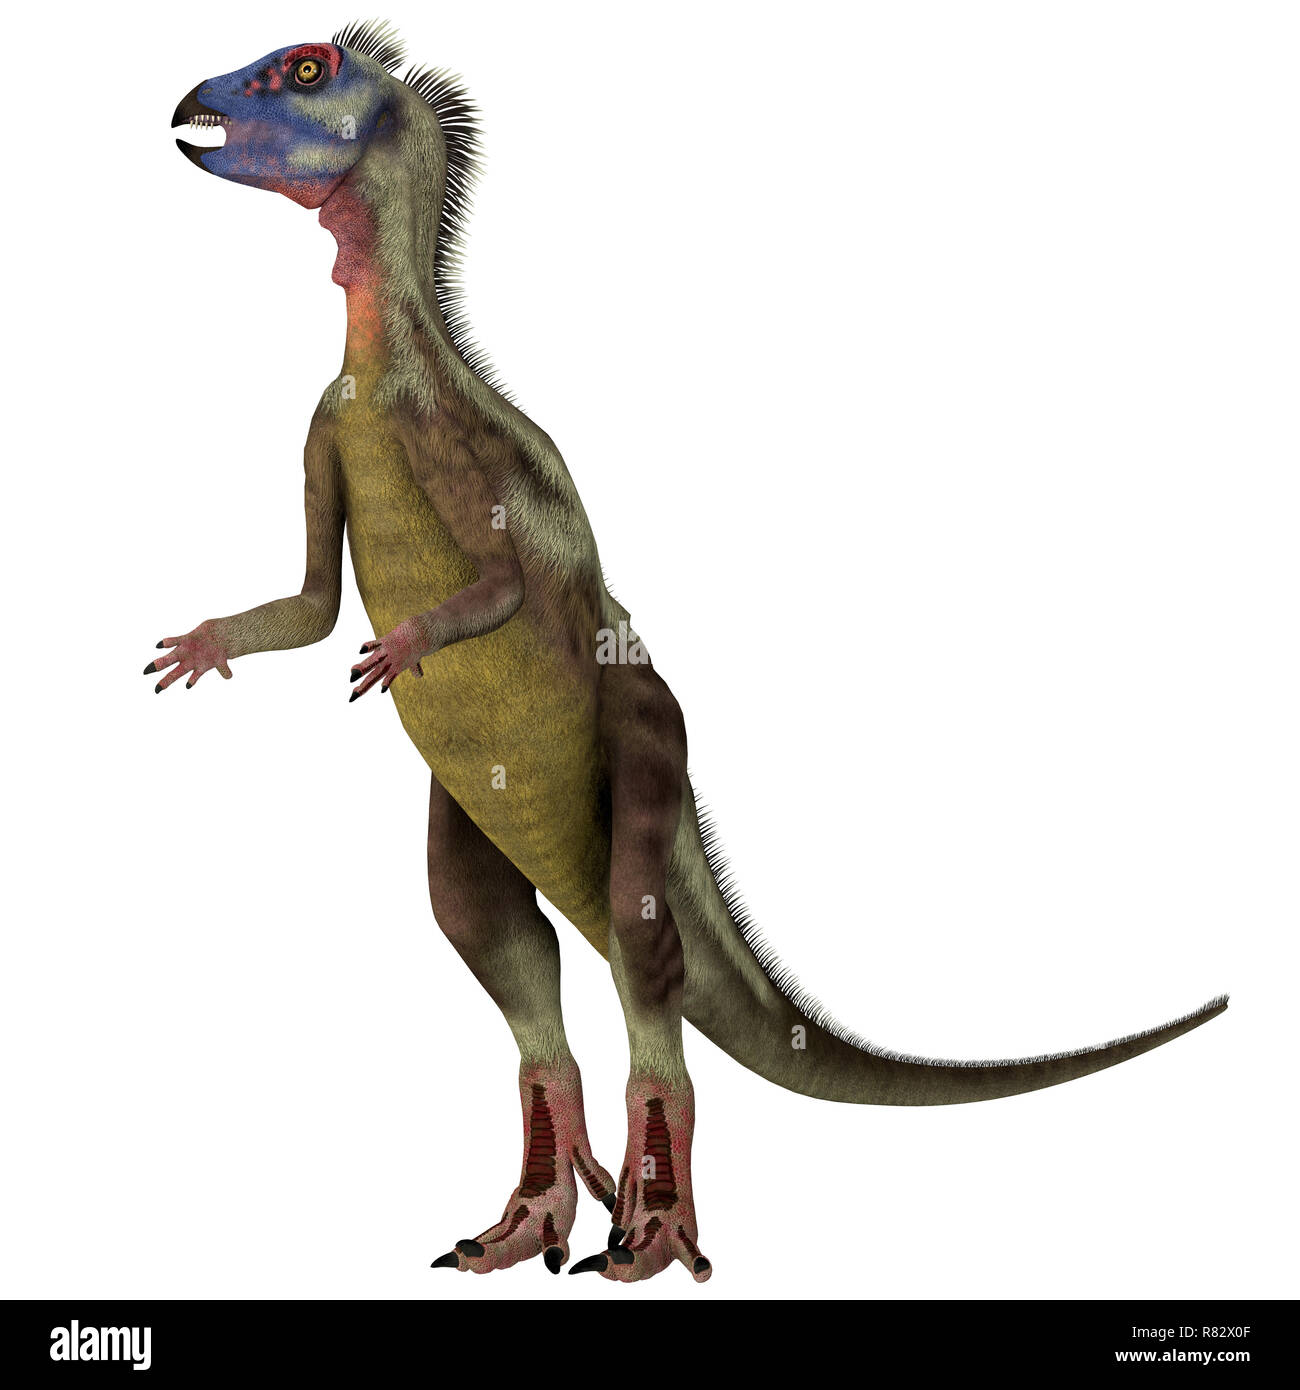 Dinosaurier Hypsilophodon auf Weiß - Hypsilophodon war ein Allesfresser ornithopoden Dinosaurier, die in England während der Kreidezeit lebten. Stockfoto